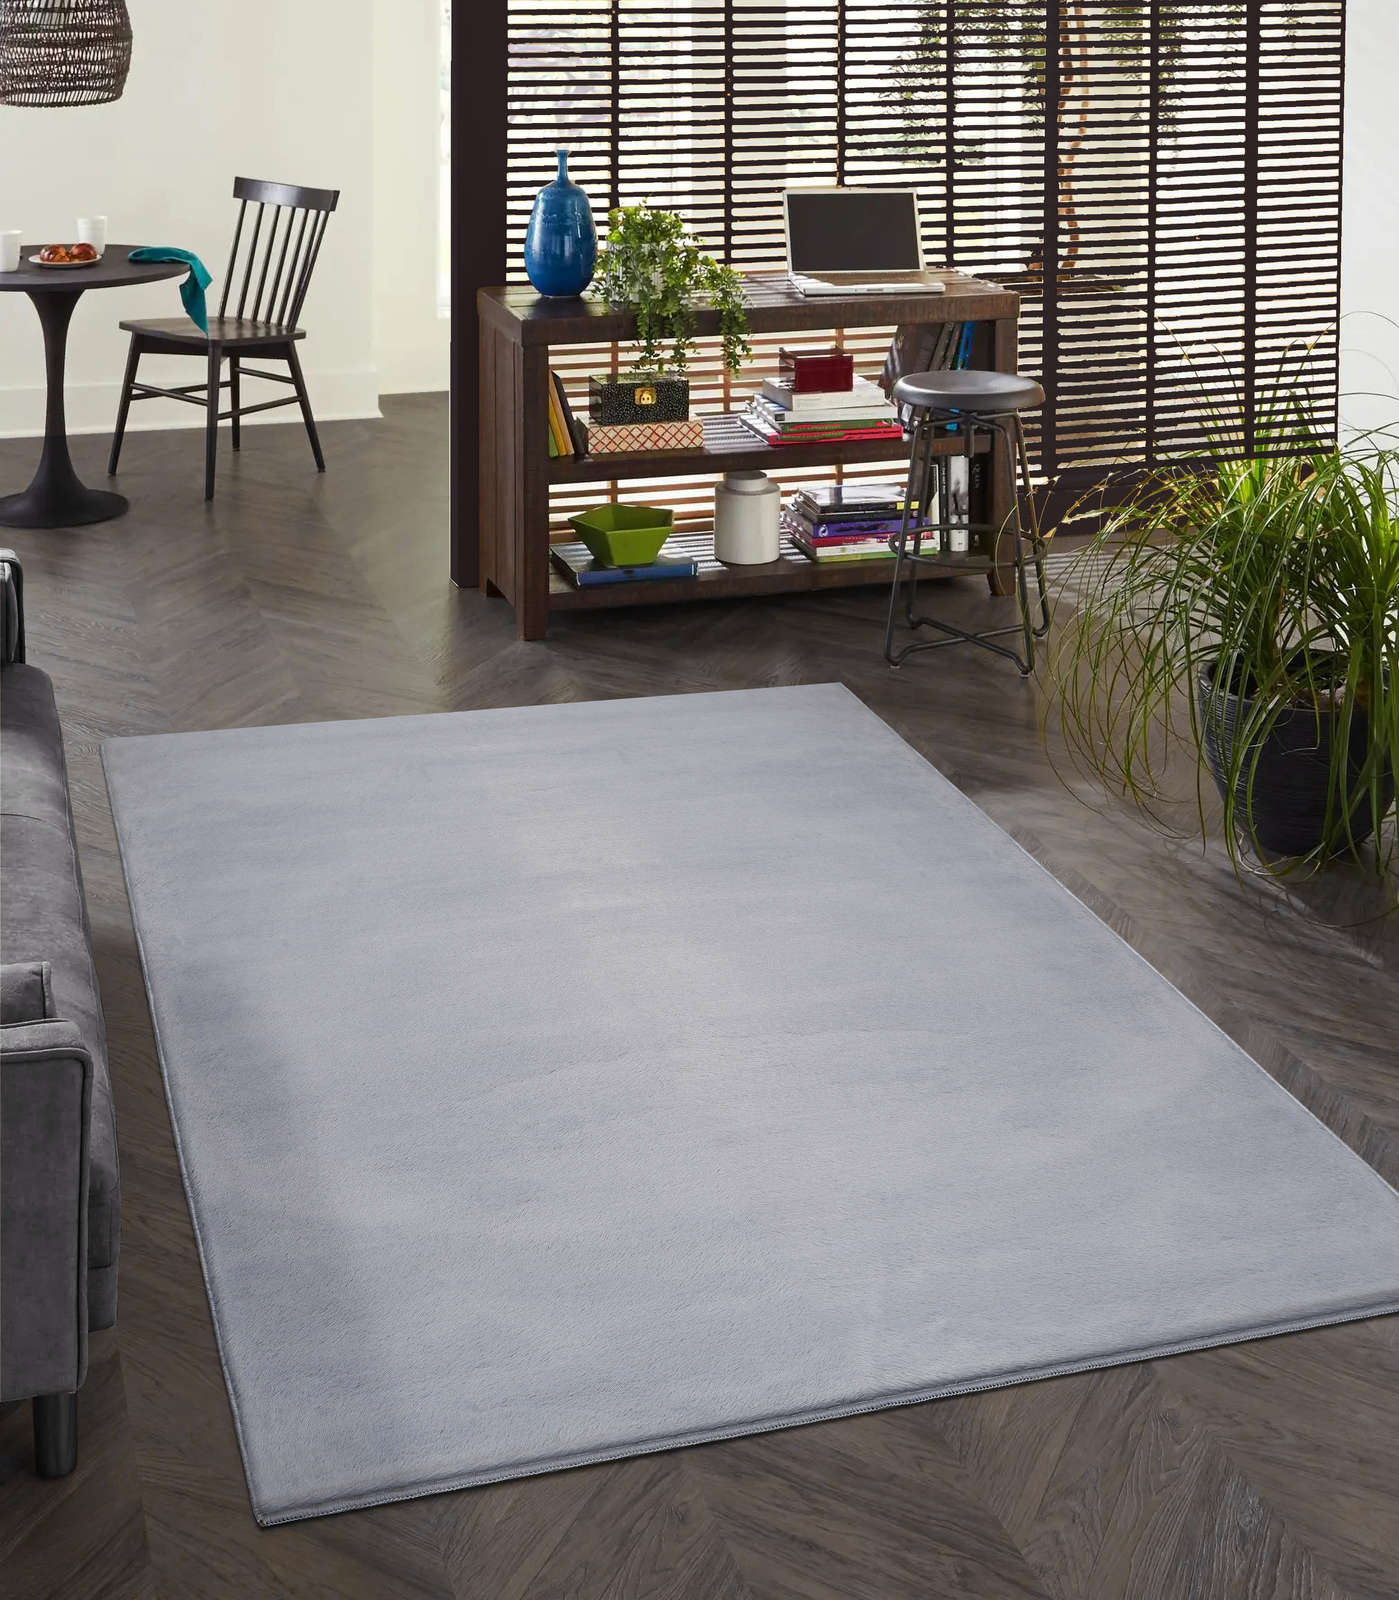             Comfortabel hoogpolig tapijt in zachtgrijs - 280 x 200 cm
        